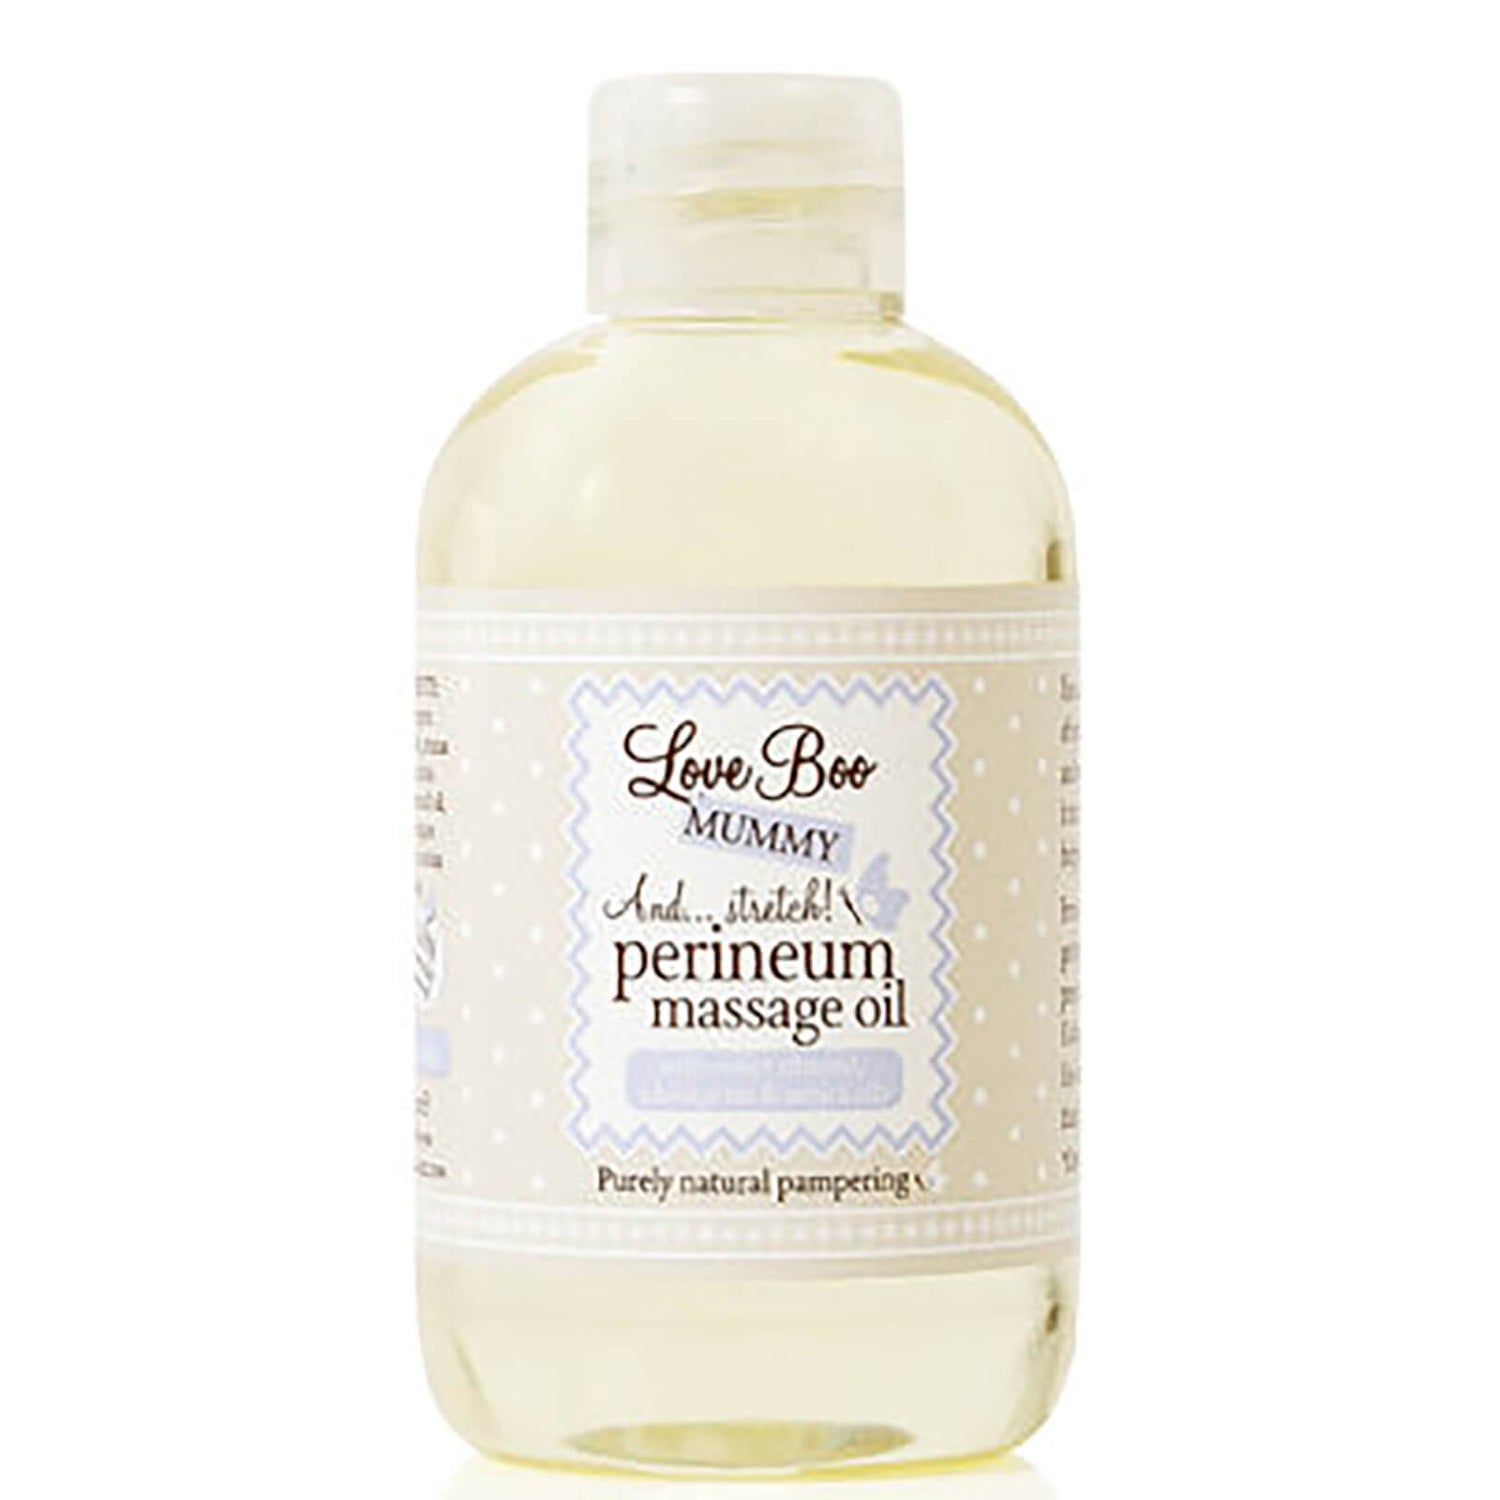 Love Boo Perineum Massage Oil (3.4 oz)